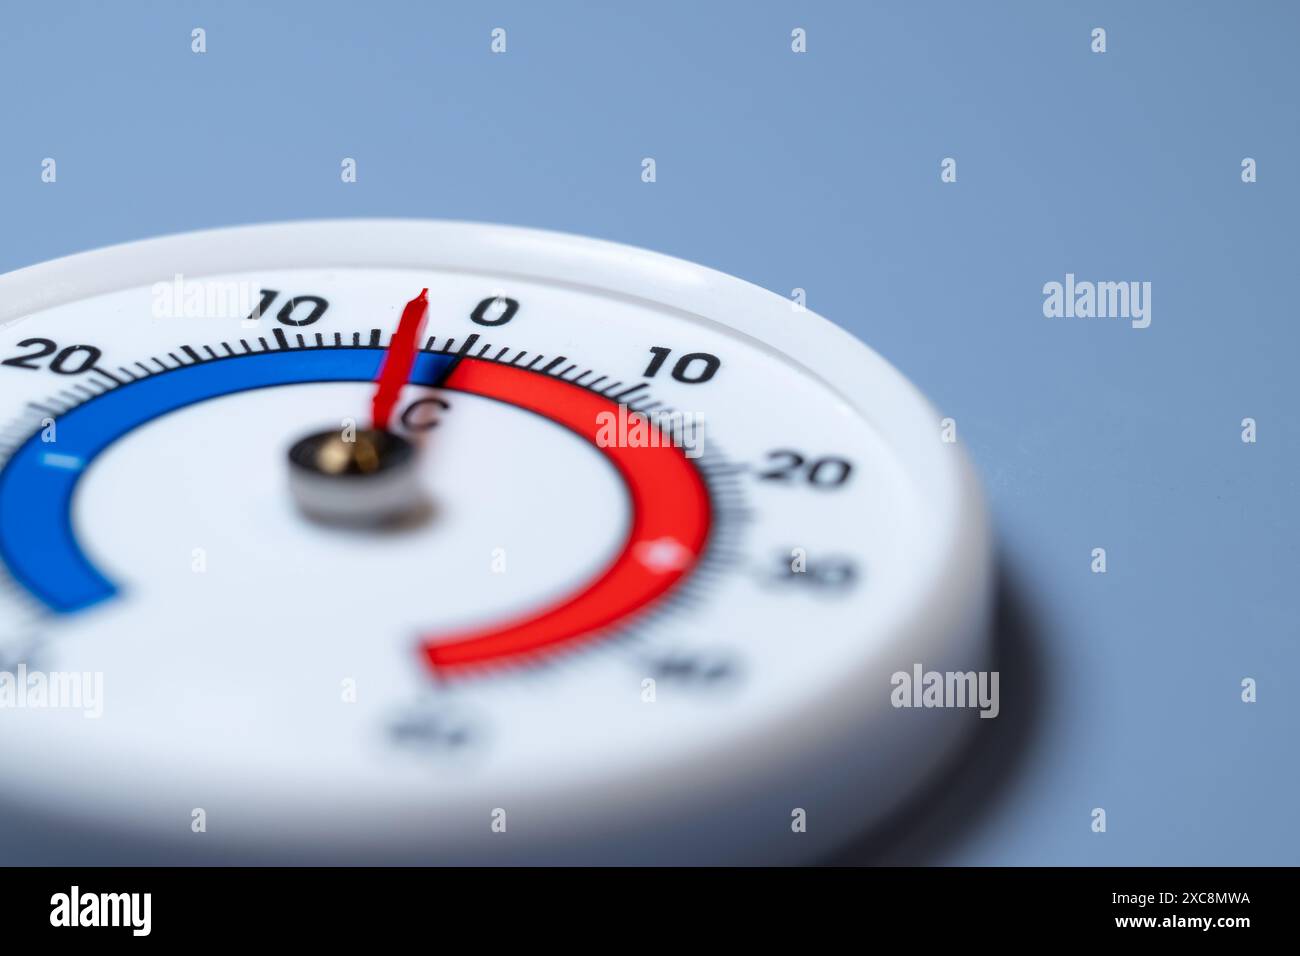 Thermomètre juste en dessous de zéro degré Celsius Banque D'Images